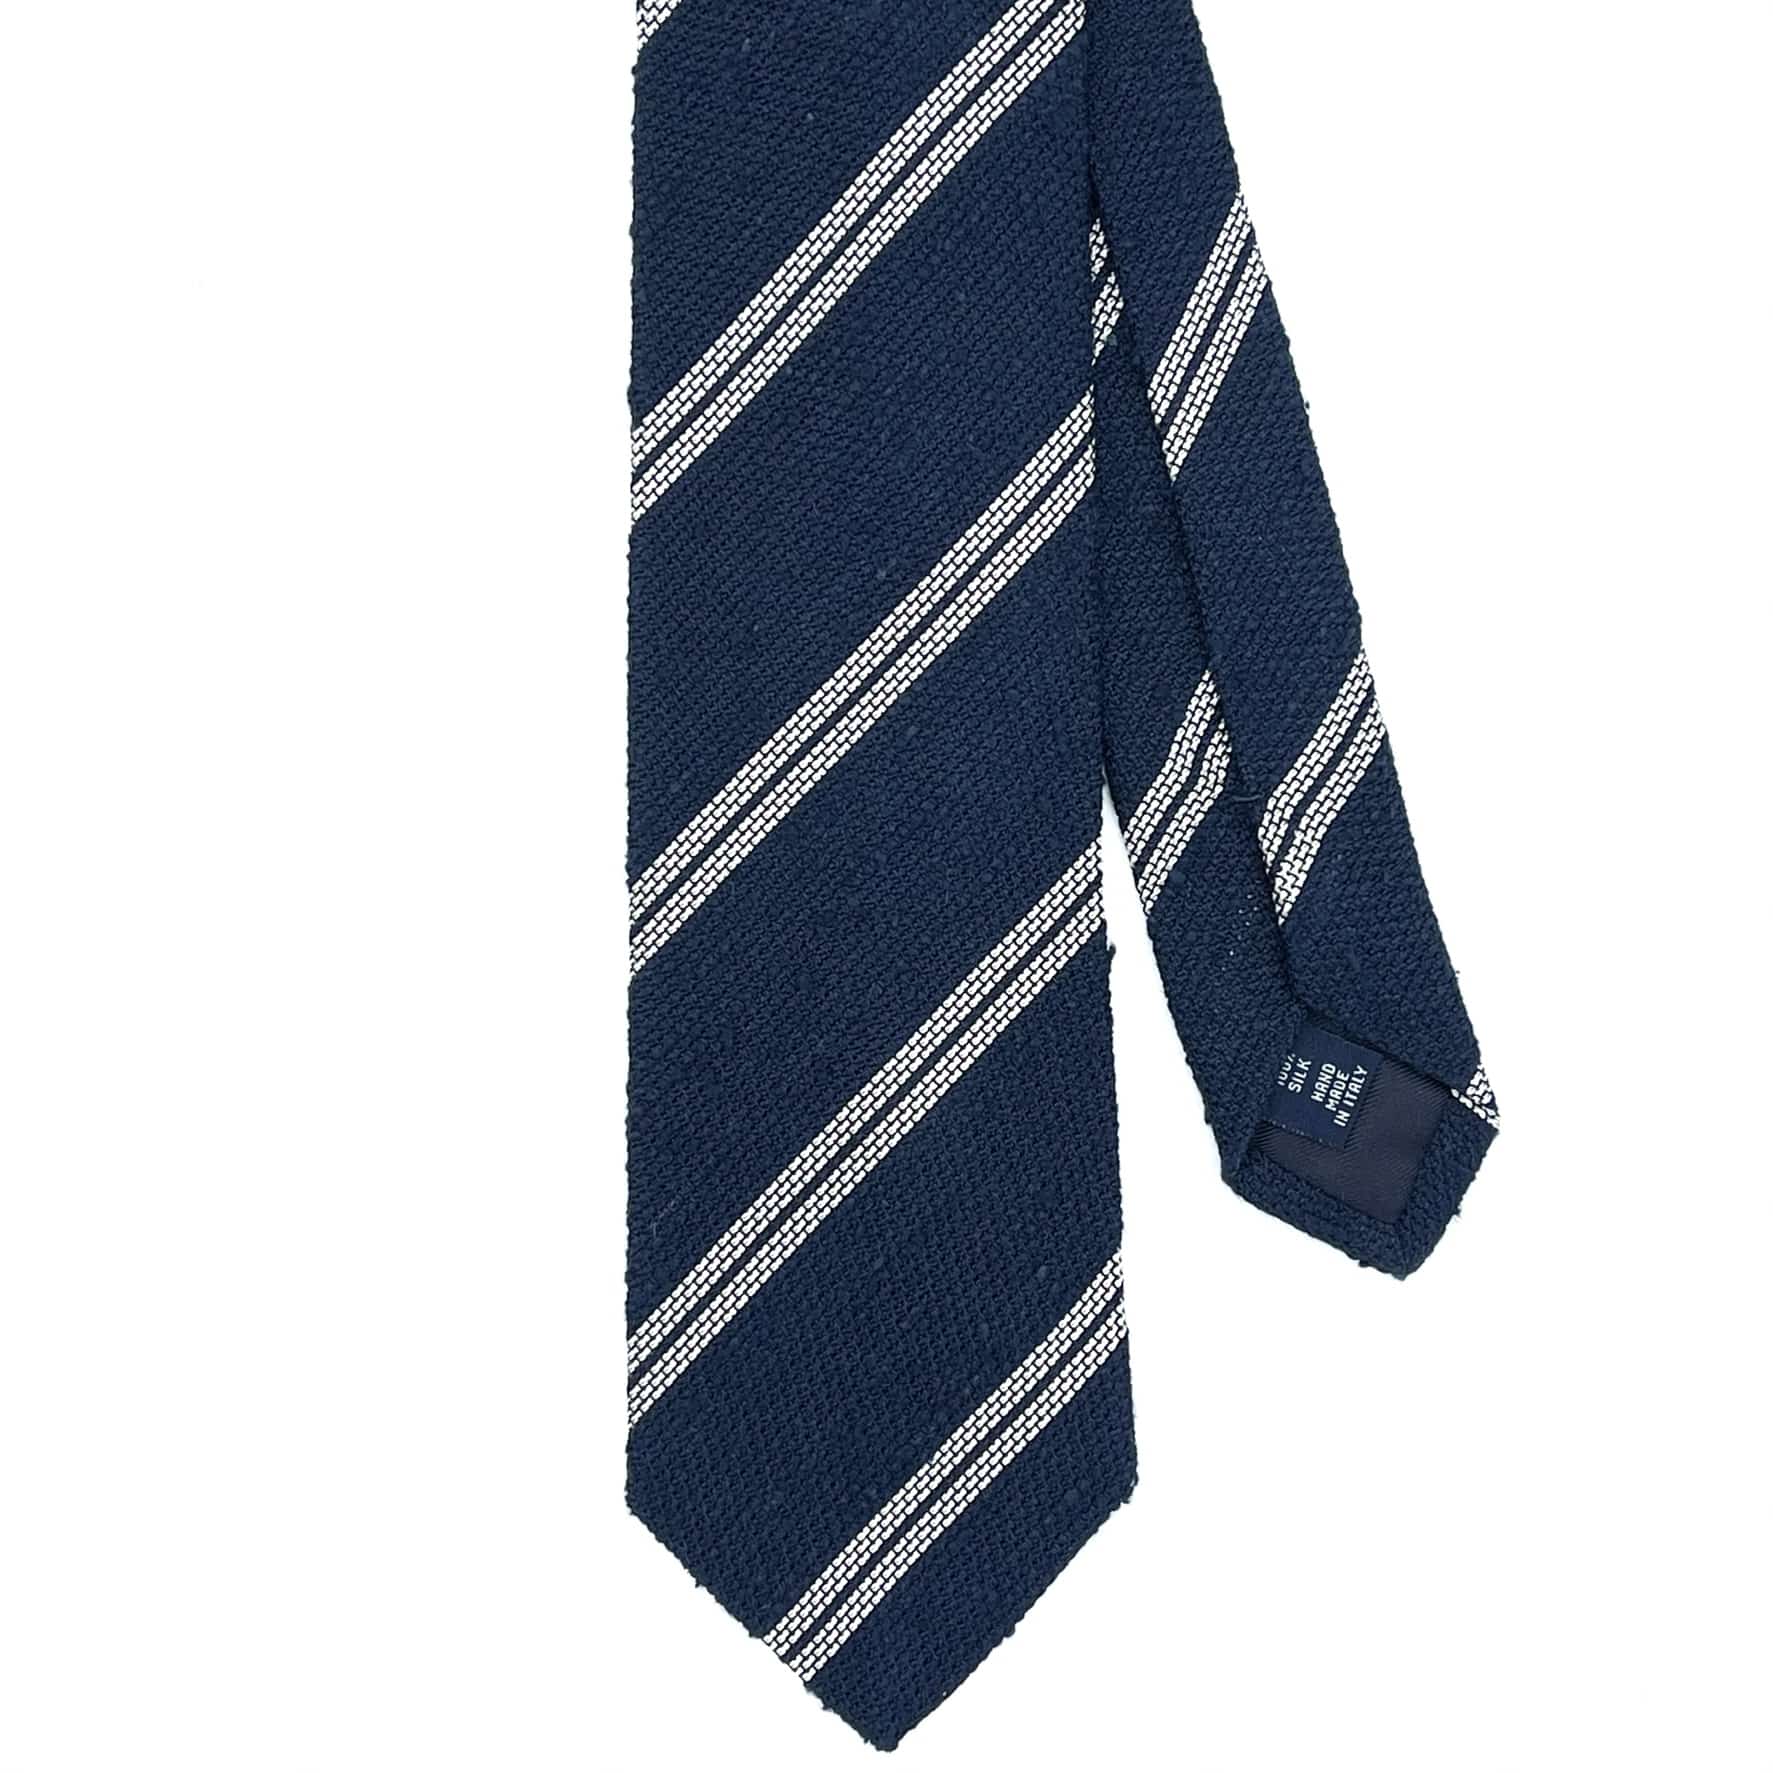 Accessoires sur mesure : cravates, ceintures…